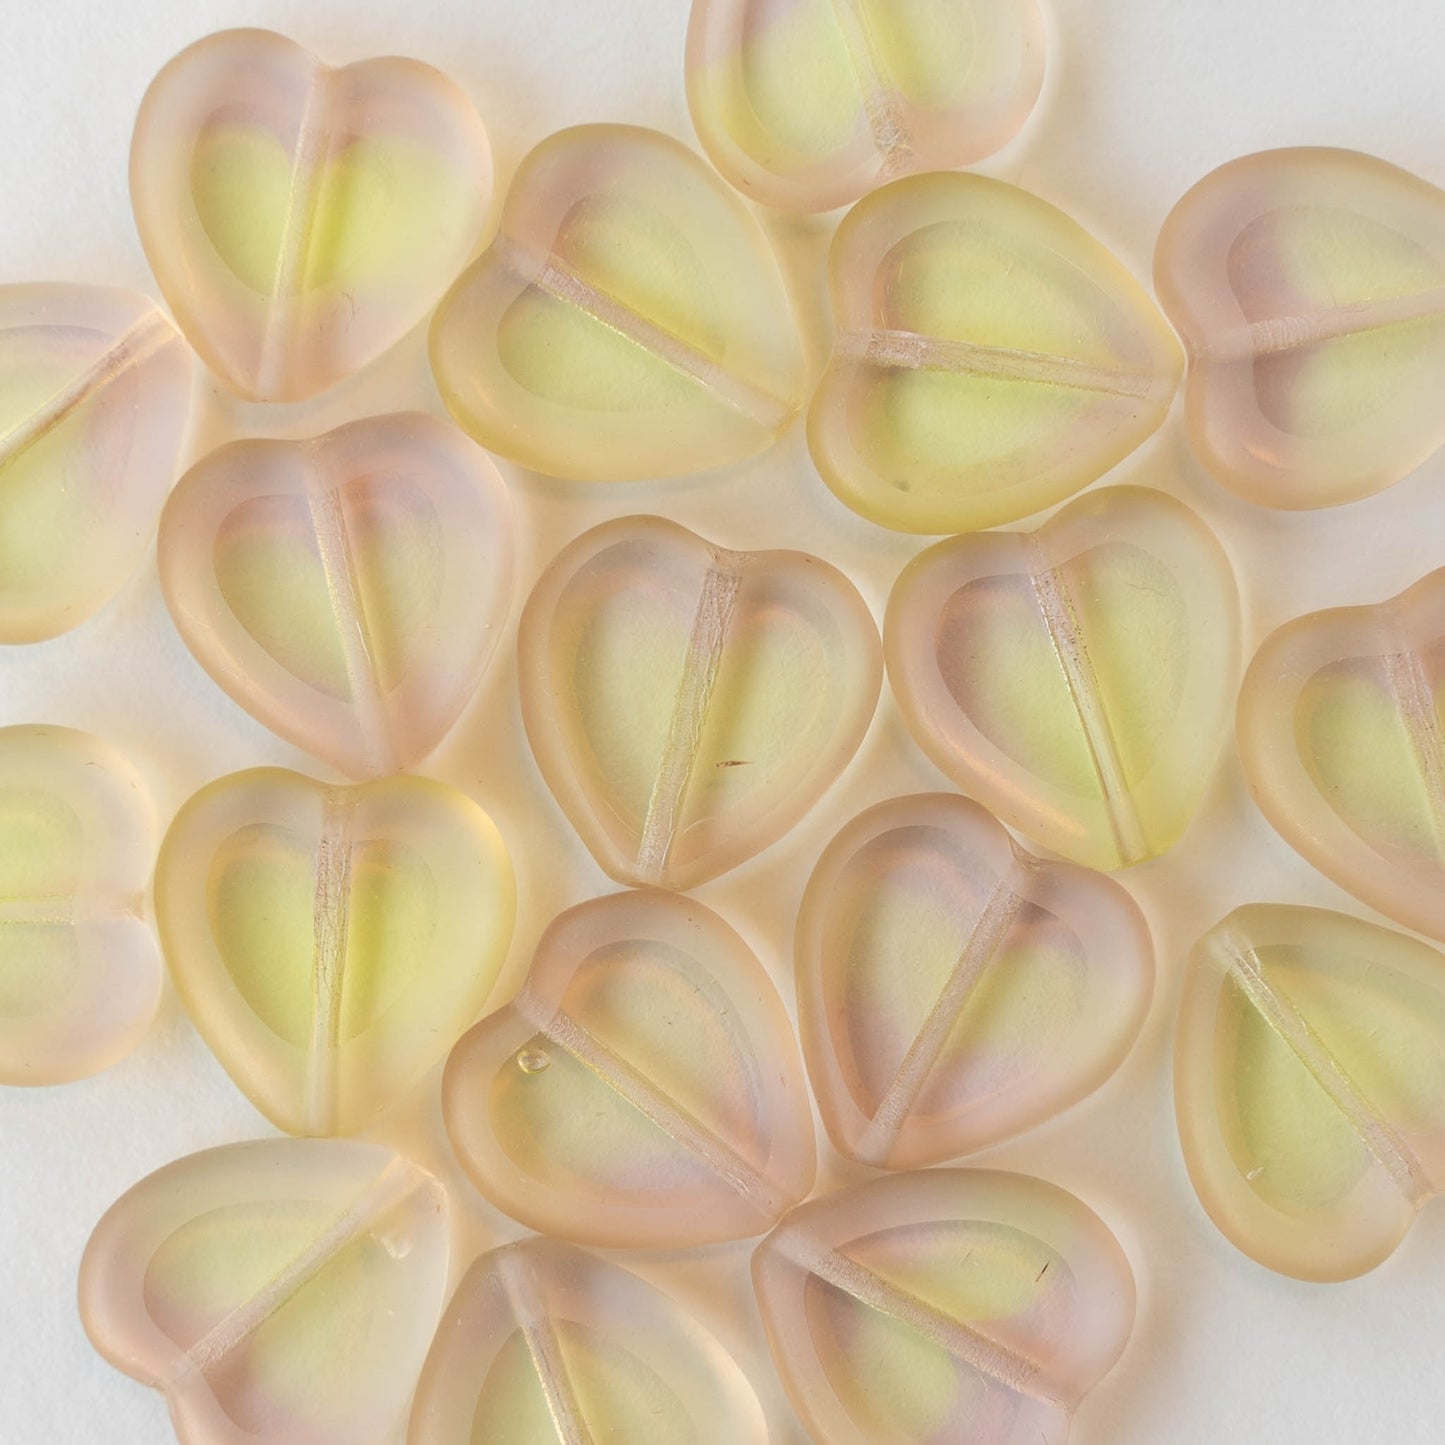 5 Czech Glass 16mm Heart Beads - Mixed Pink Gold Finish